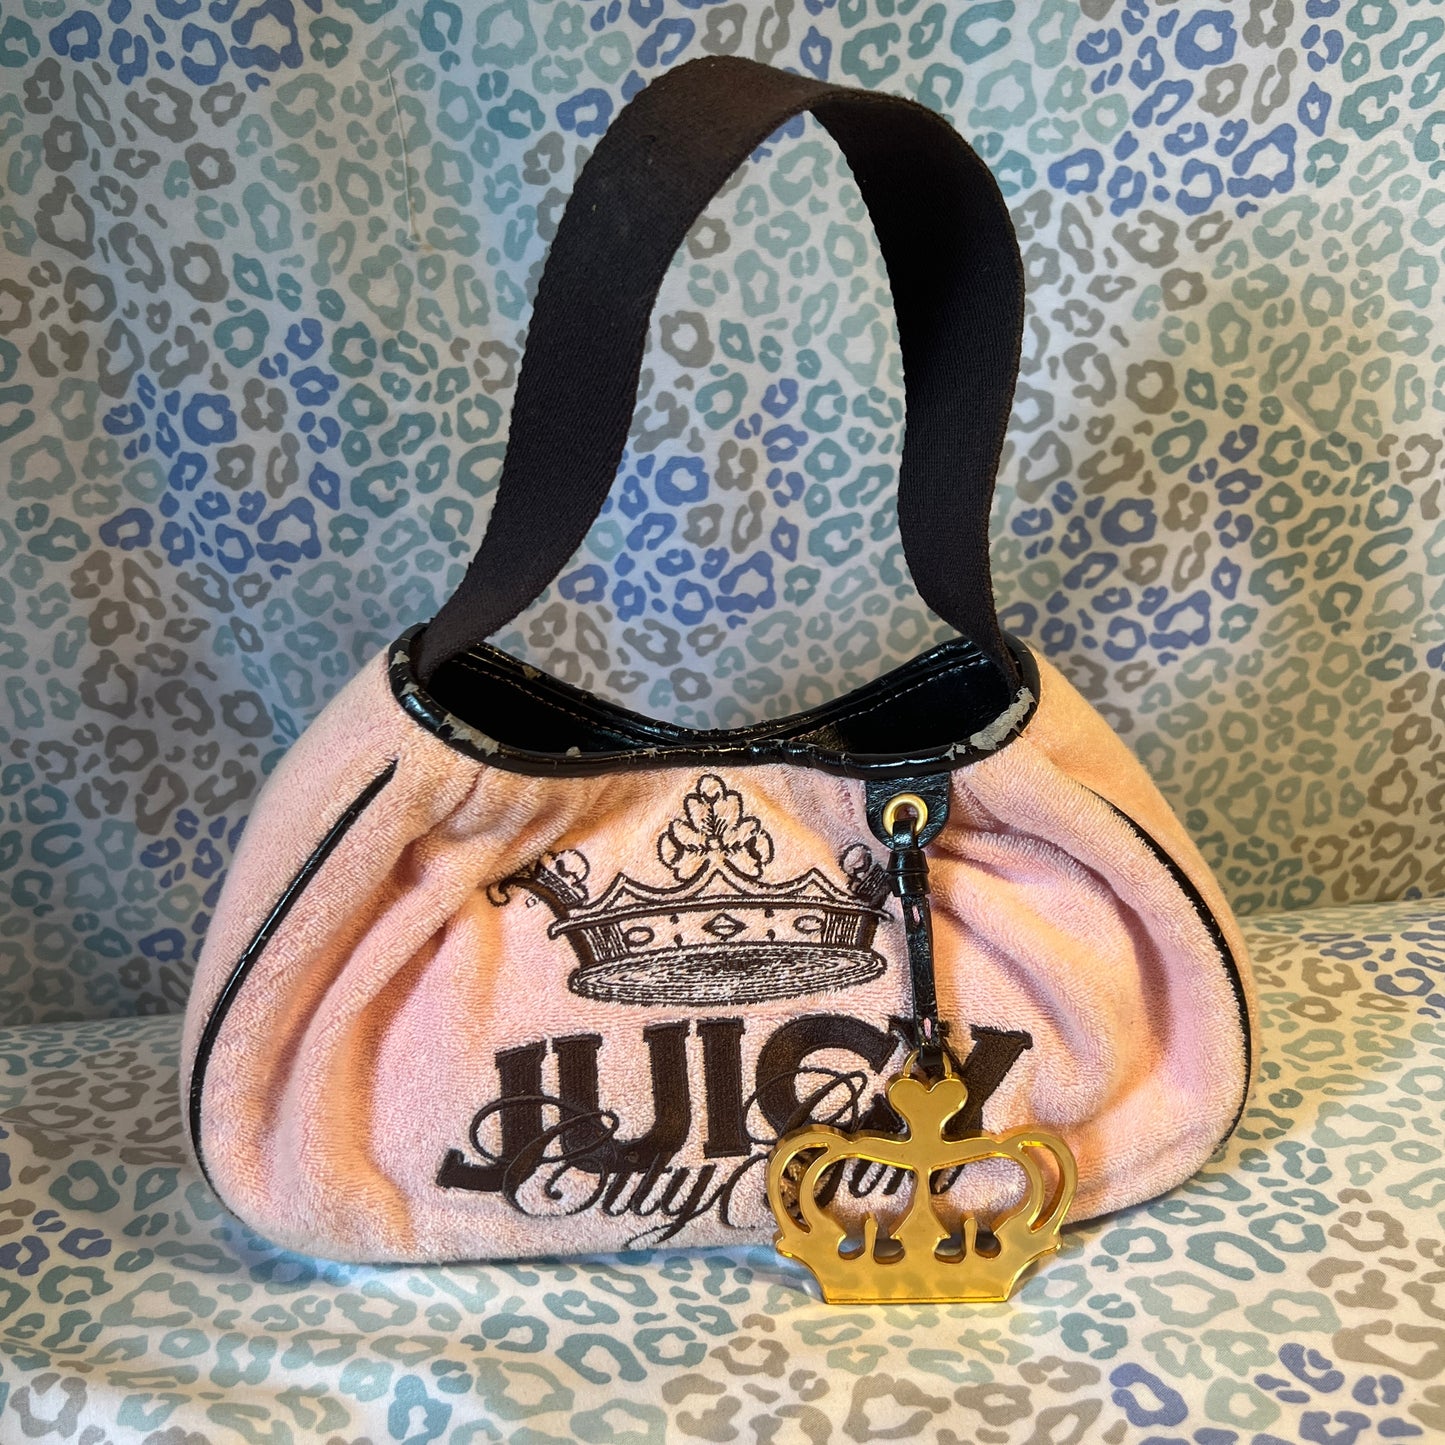 Vintage Rare Pink Juicy Couture Purse Handbag Bag - Juicy City Girl Terry Cloth